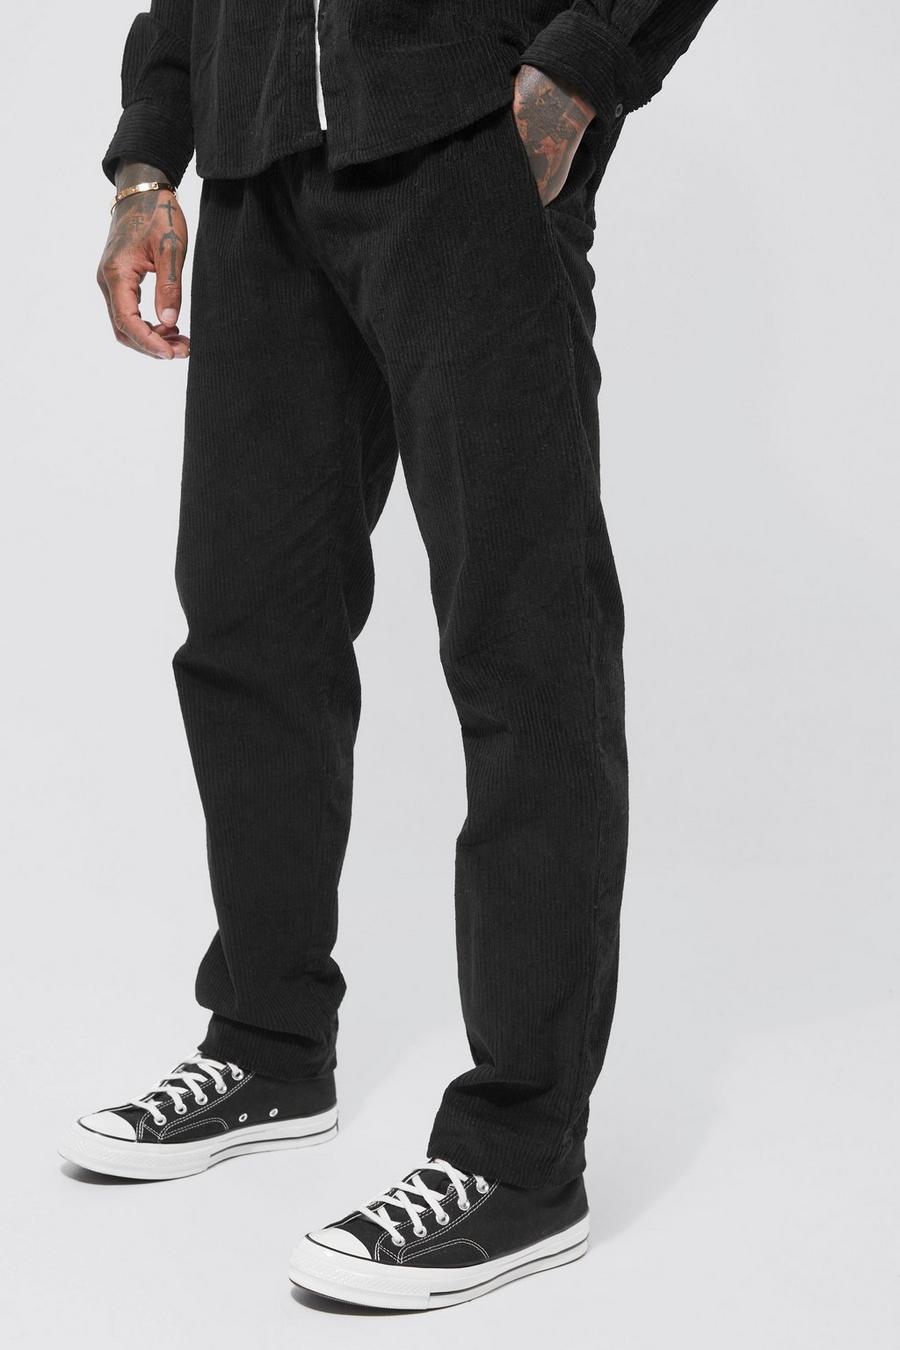 Pantalón ajustado elástico de pana, Black negro